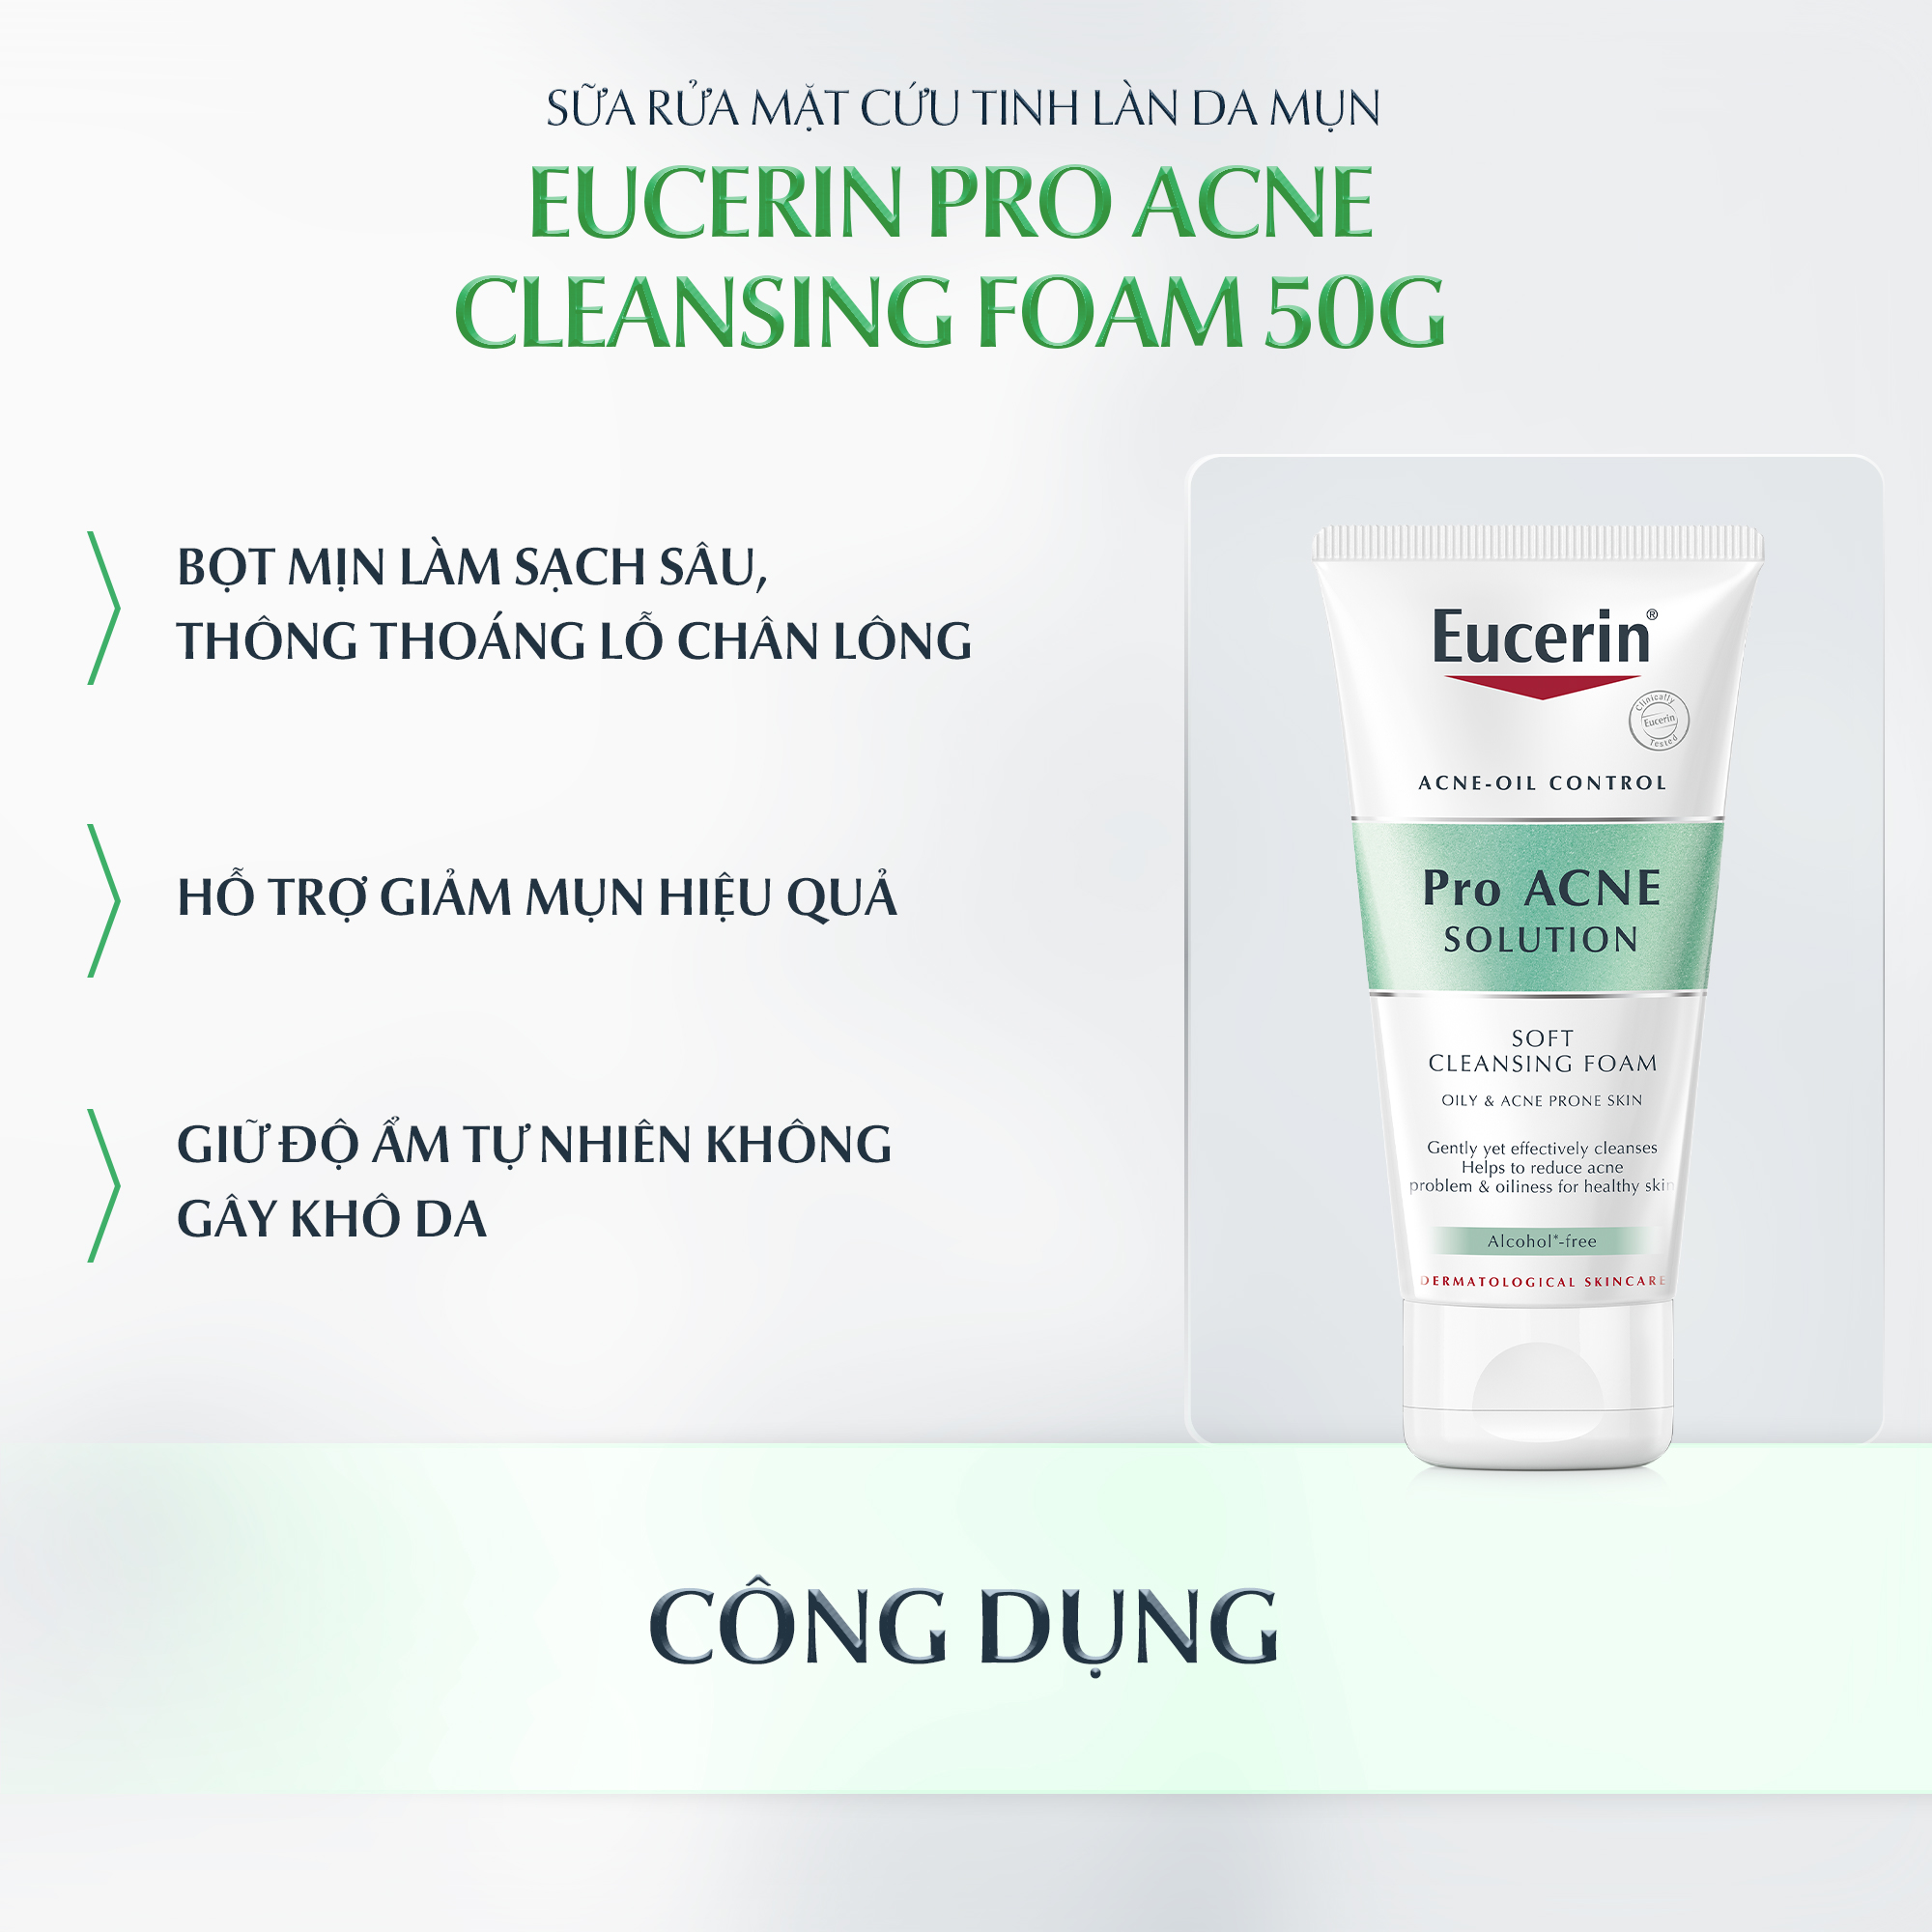 Sữa rửa mặt cứu tinh làn da mụn Eucerin Pro Acne Cleansing Foam 50g